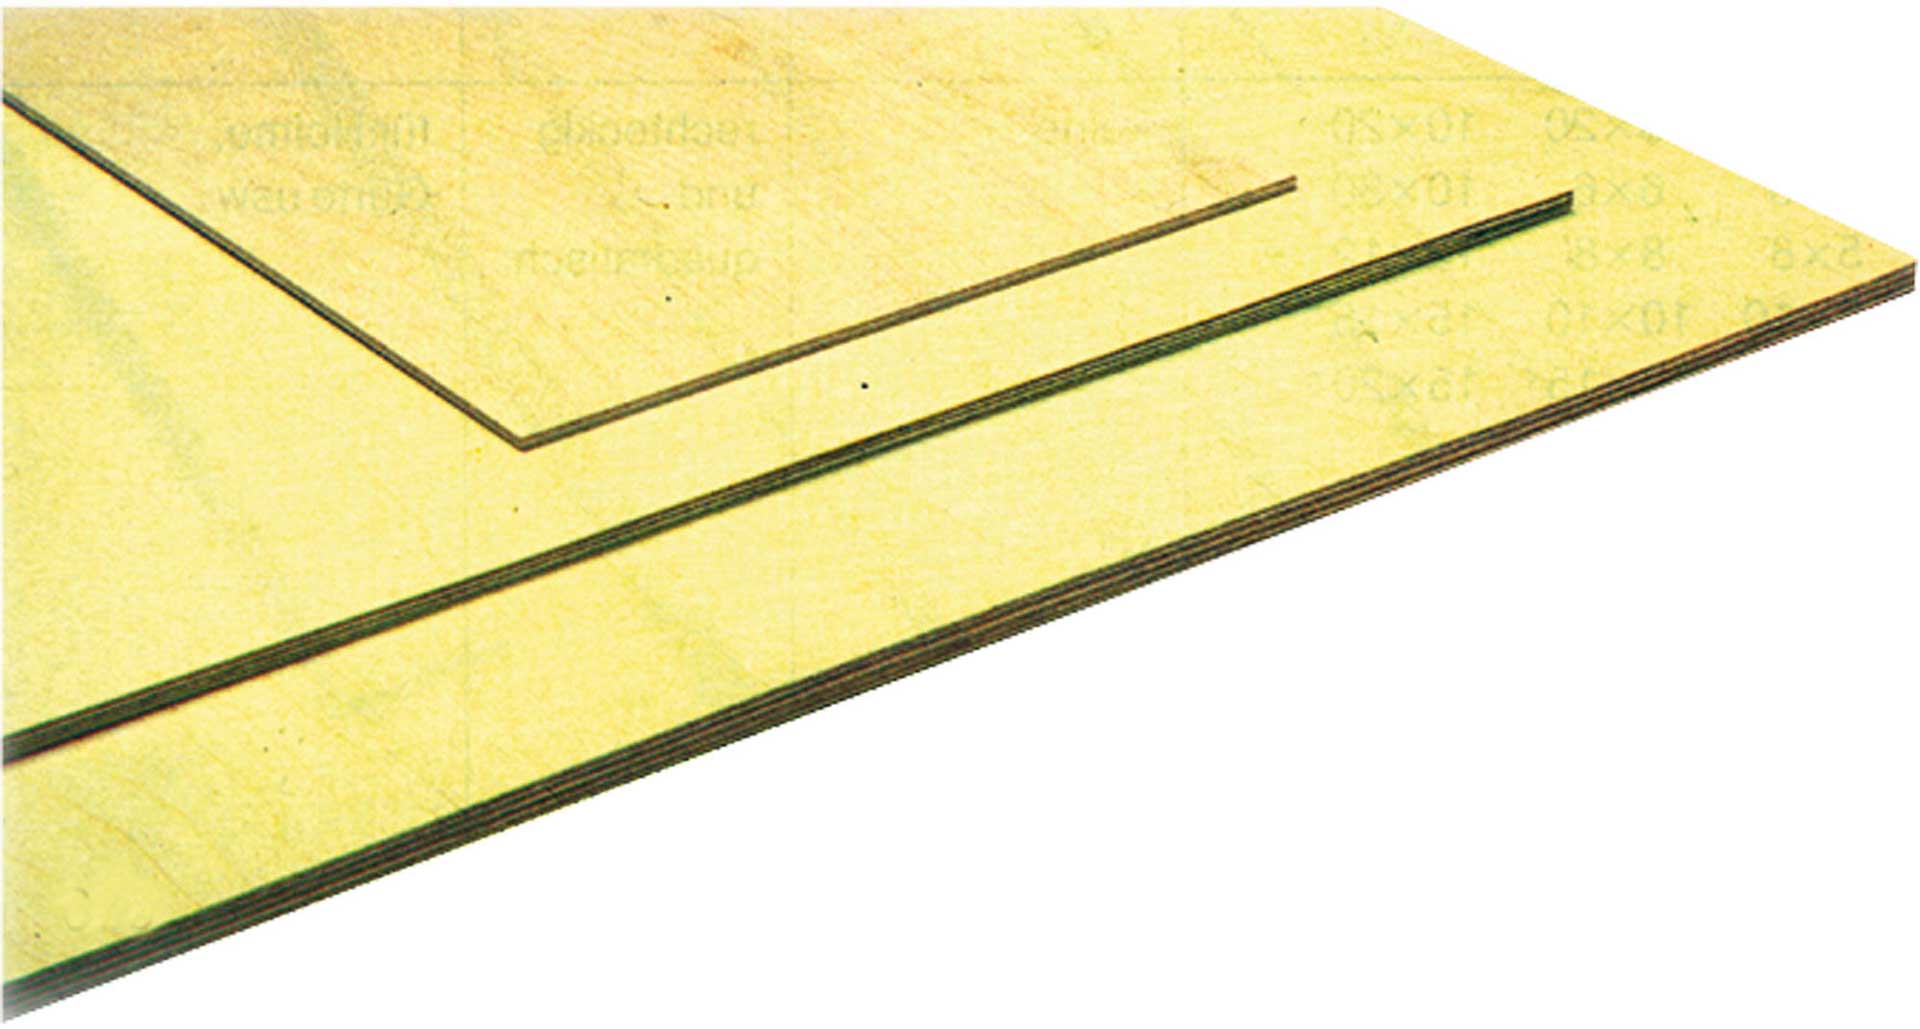 MODELLBAU LINDINGER poplar plywood 4x300x1200mm